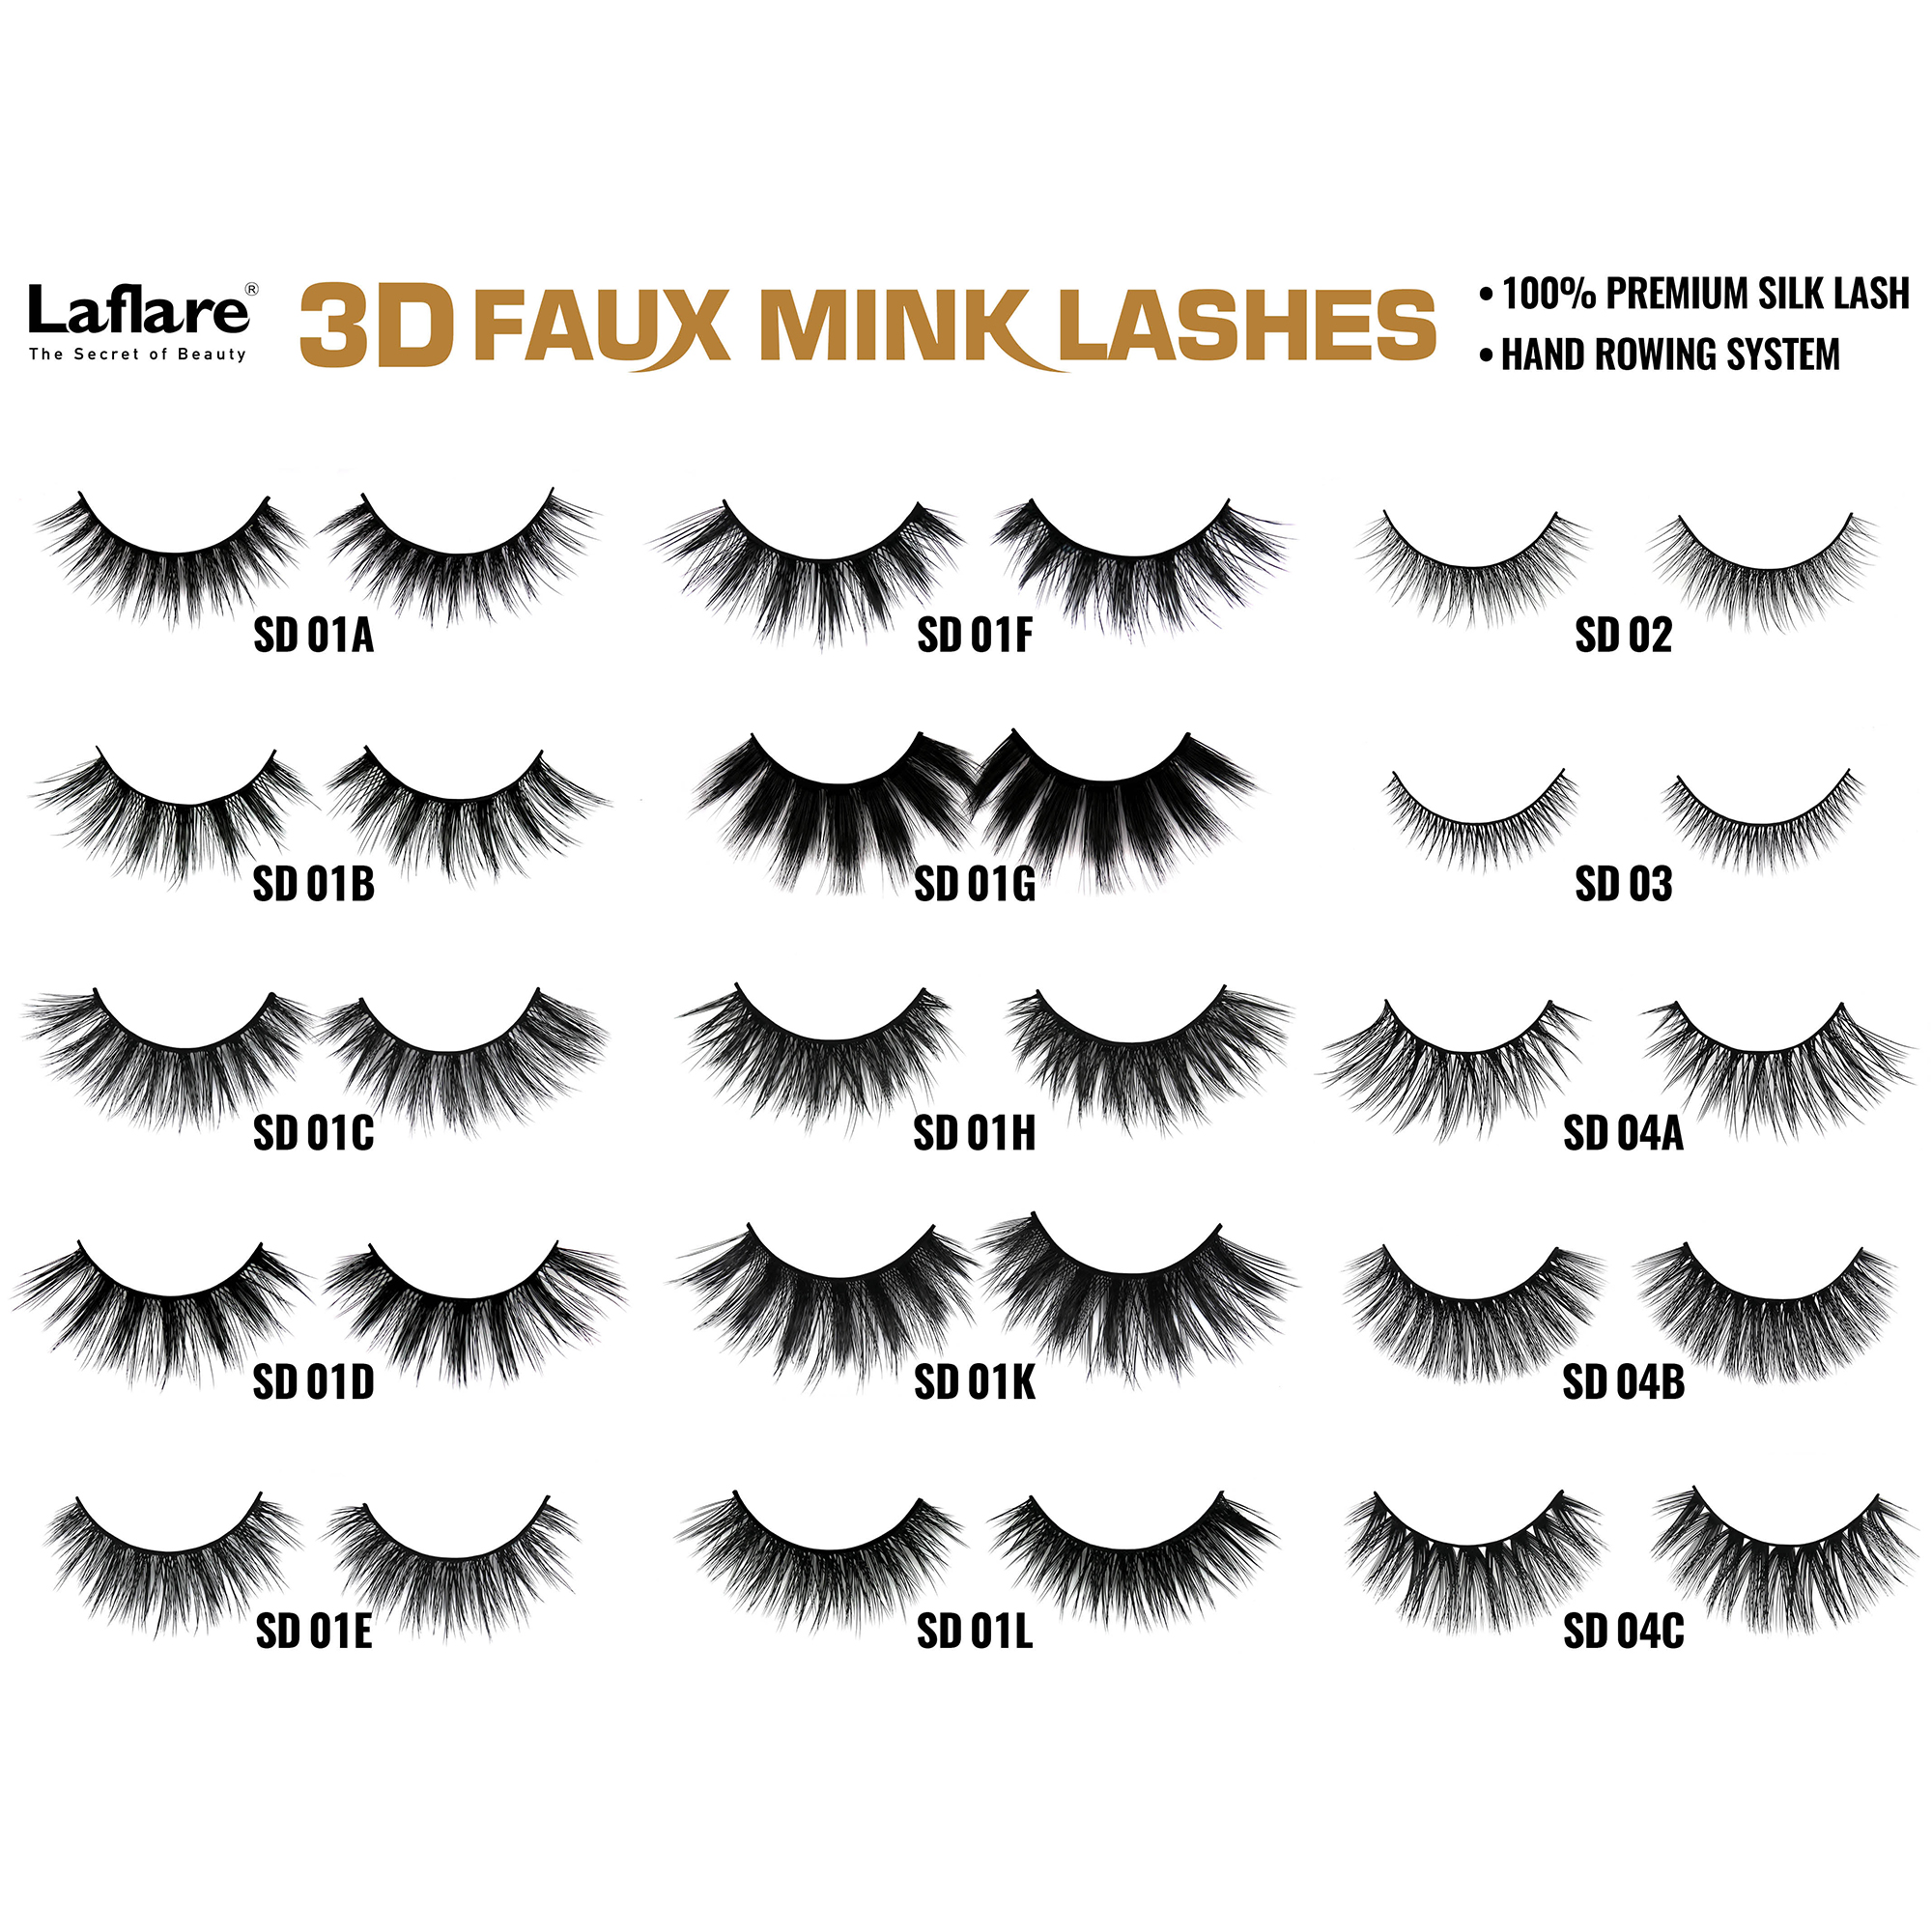 LAFLARE 3d Faux Mink Lashes - SD09E